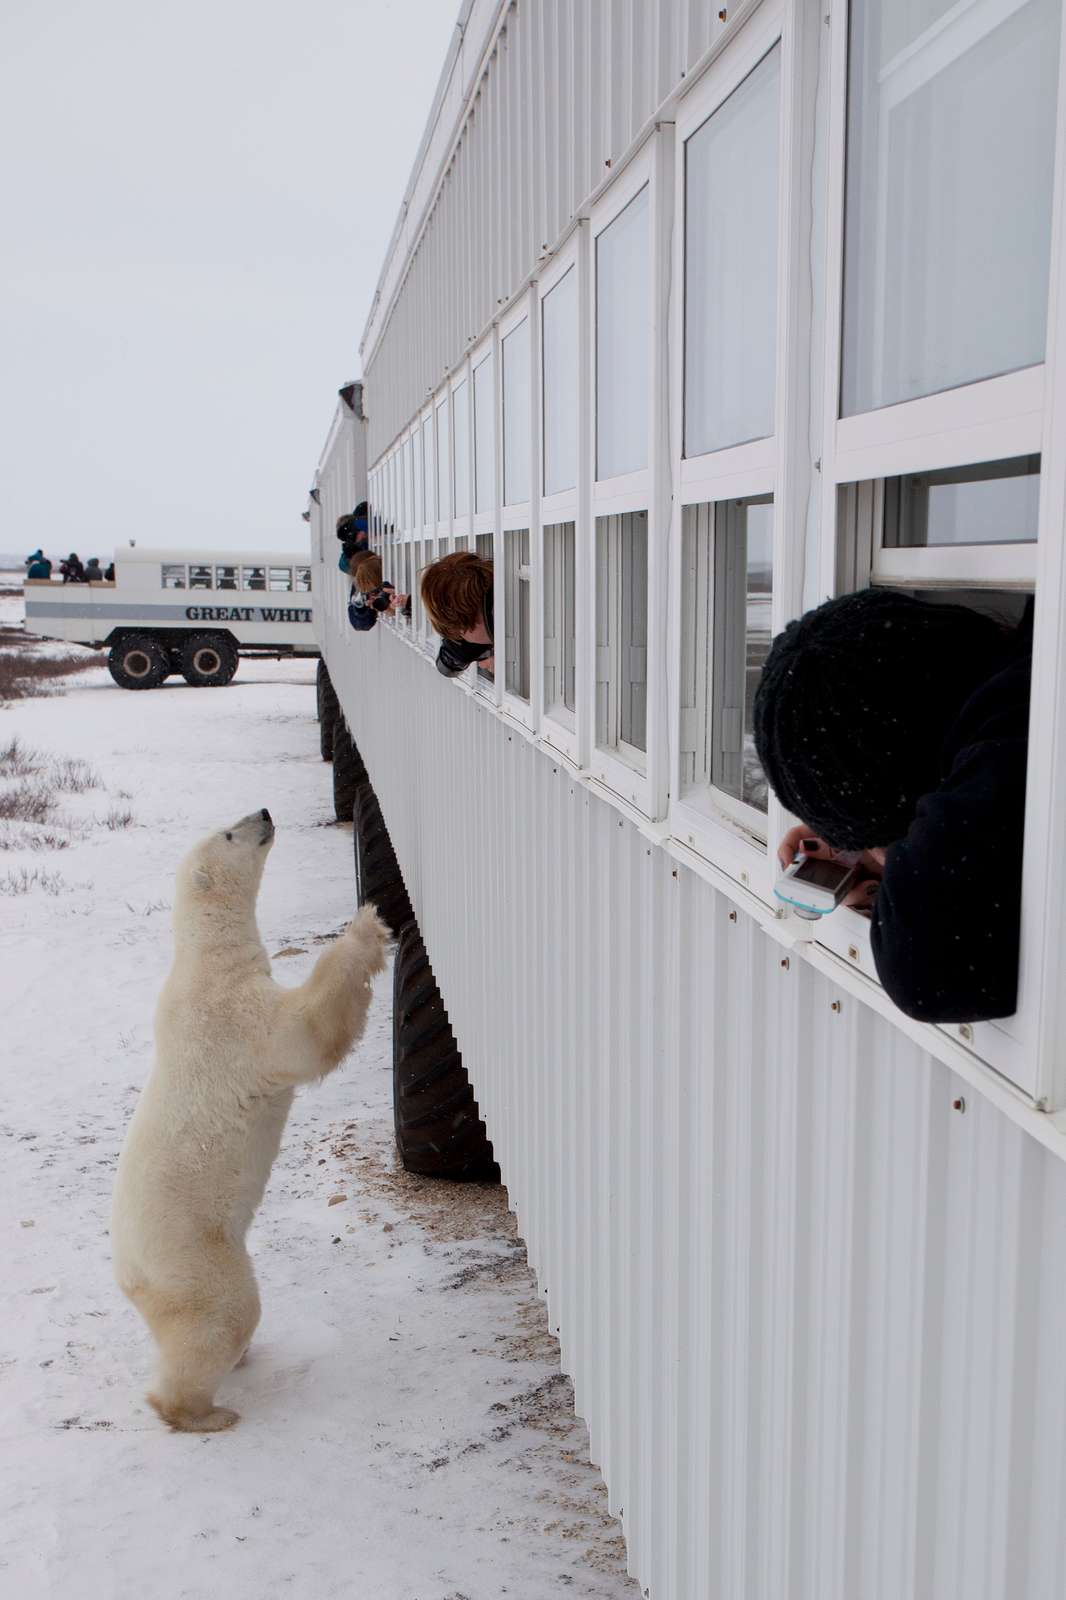 A polar bear standing on its hind legs near a Polar Rover